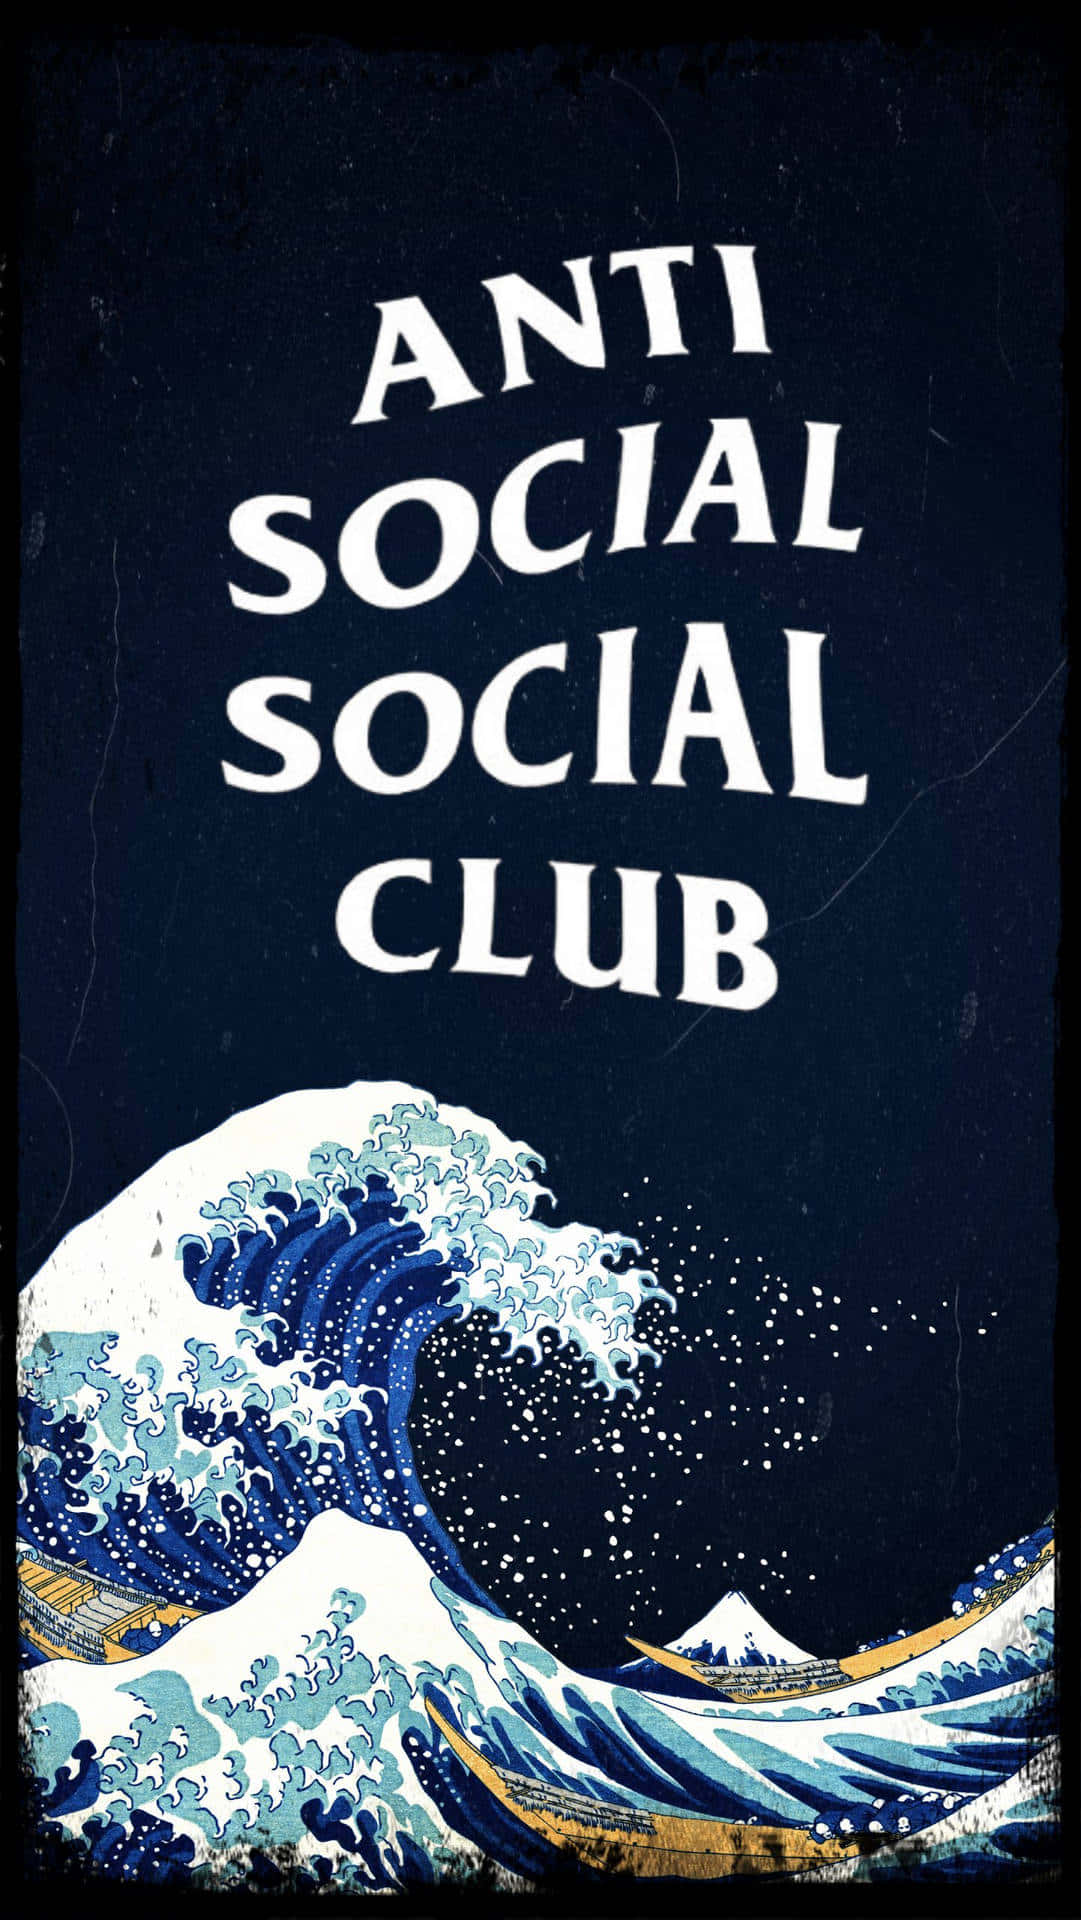 Download Anti Social Club Iphone Wallpaper 